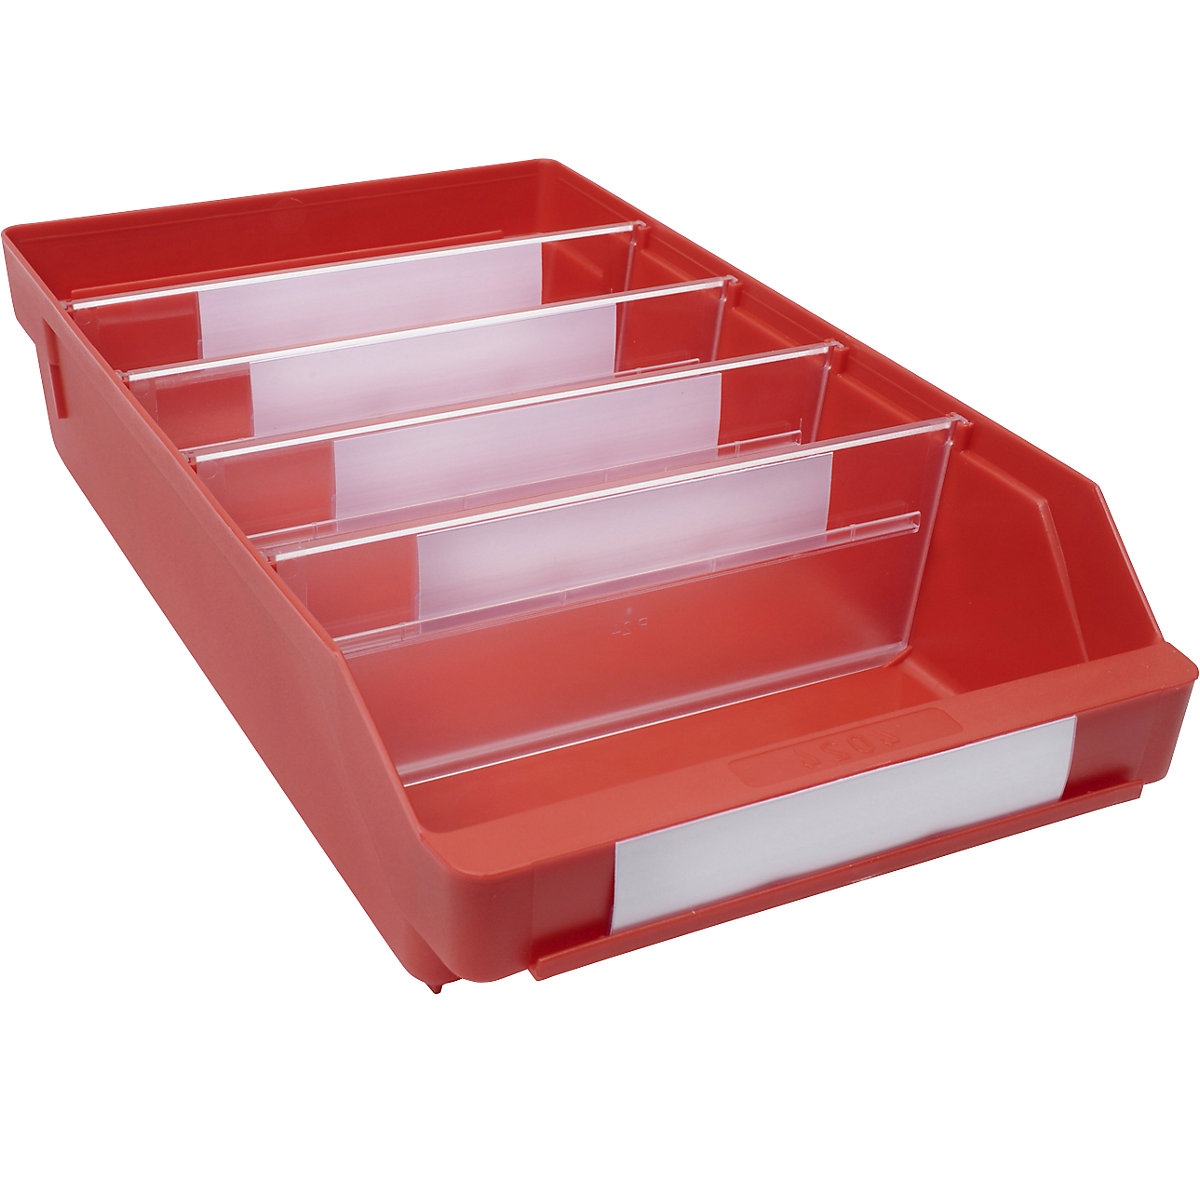 Regalkasten aus hochschlagfestem Polypropylen STEMO, rot, LxBxH 400 x 240 x 95 mm, VE 15 Stk-9